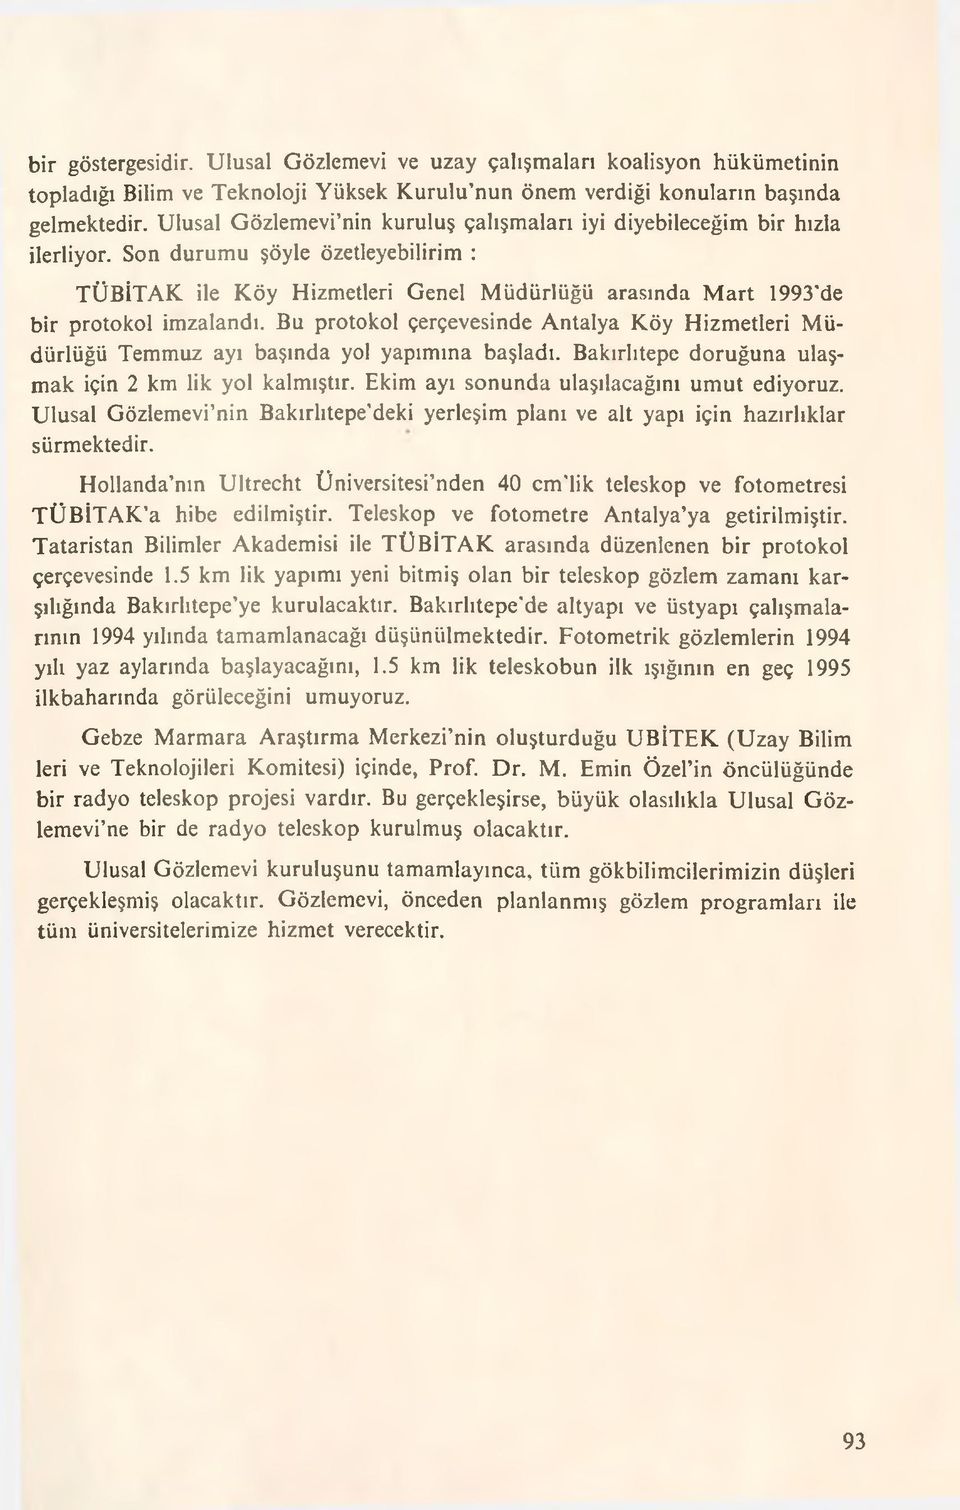 Son durumu şöyle özetleyebilirim : TÜBİTAK ile Köy Hizmetleri Genel Müdürlüğü arasında Mart 1993 de bir protokol imzalandı.